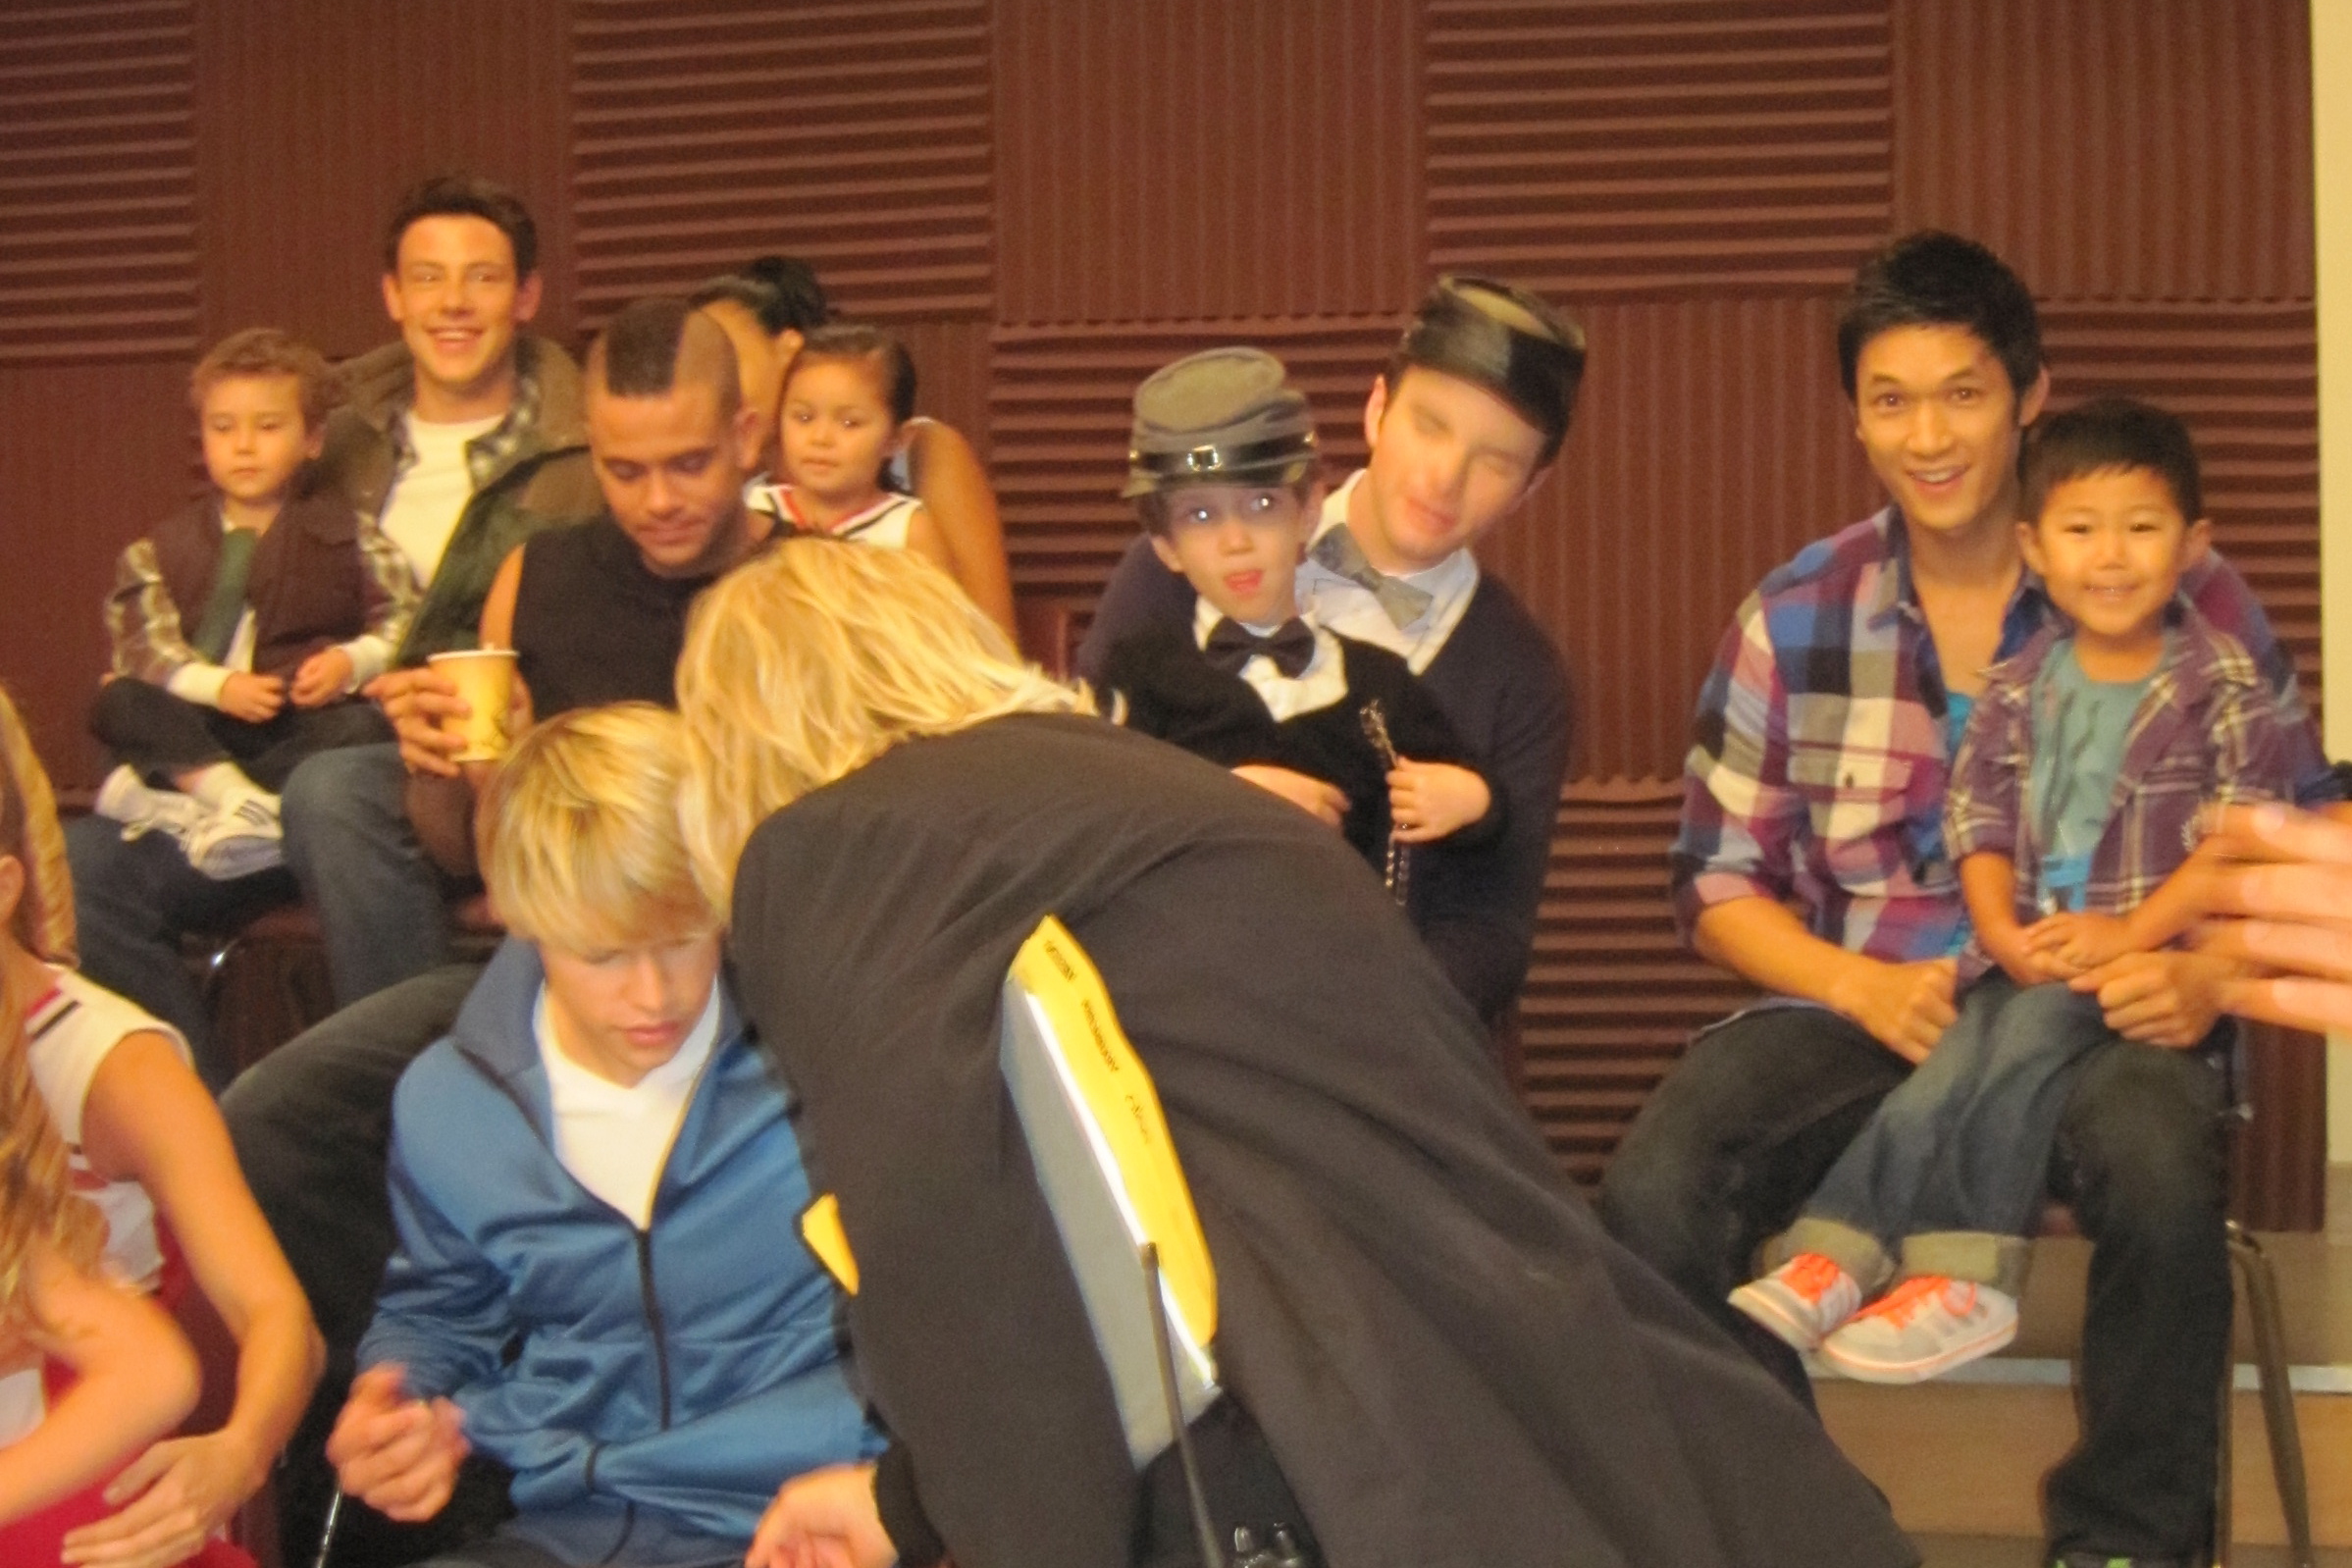 Evan Kishiyama and Harry Shum Jr. on the set of Glee